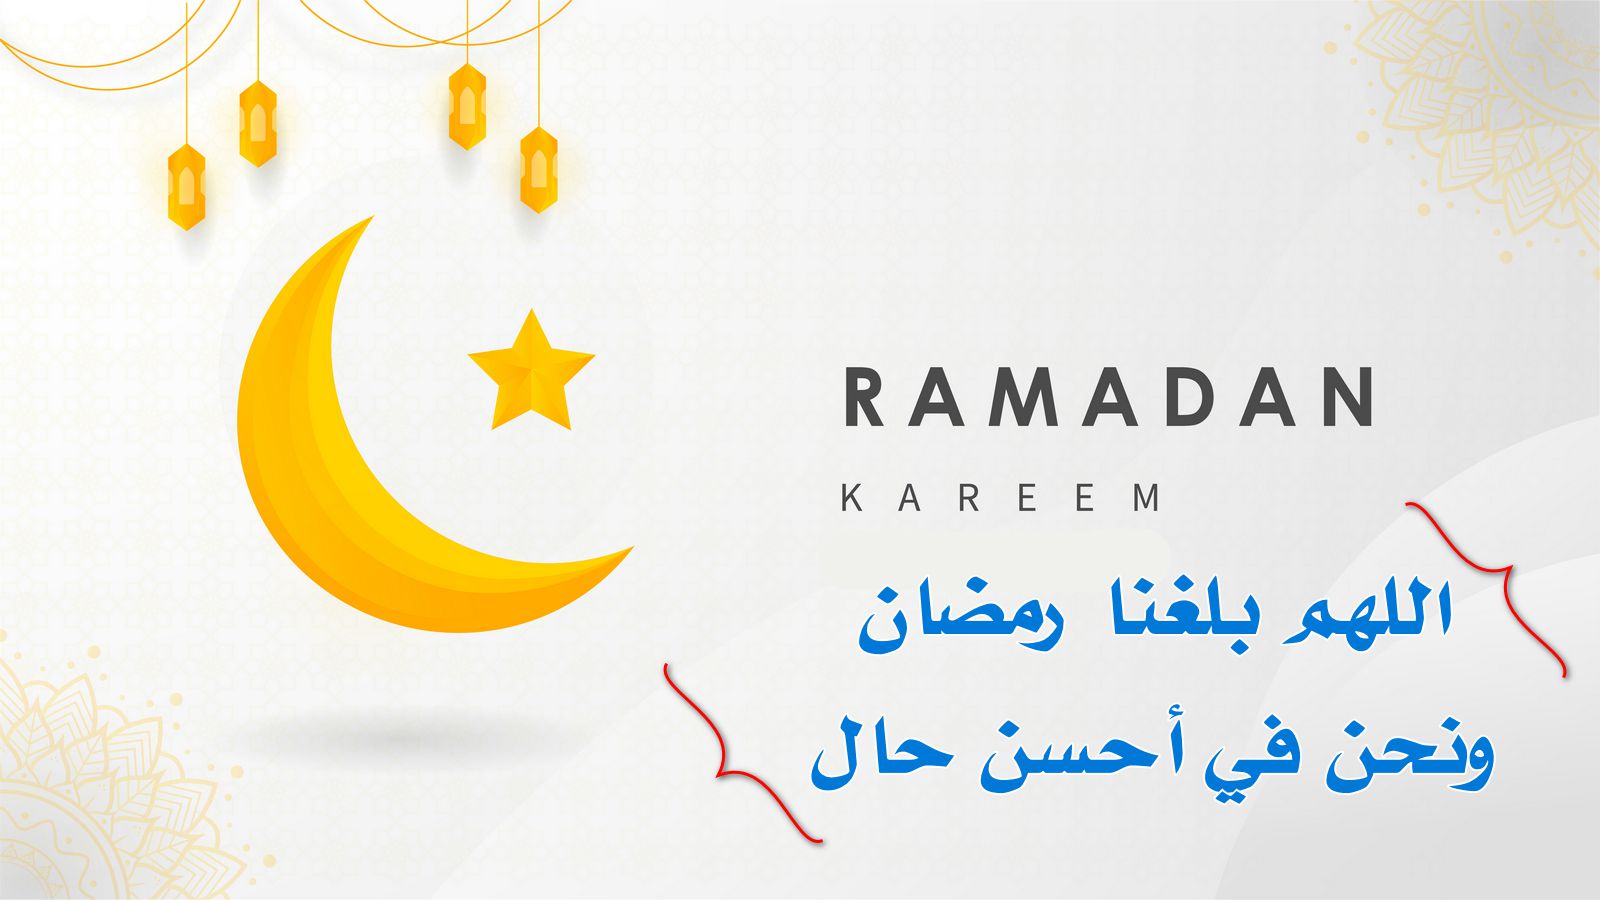 اللهم بلغنا رمضان ونحن في احسن حال